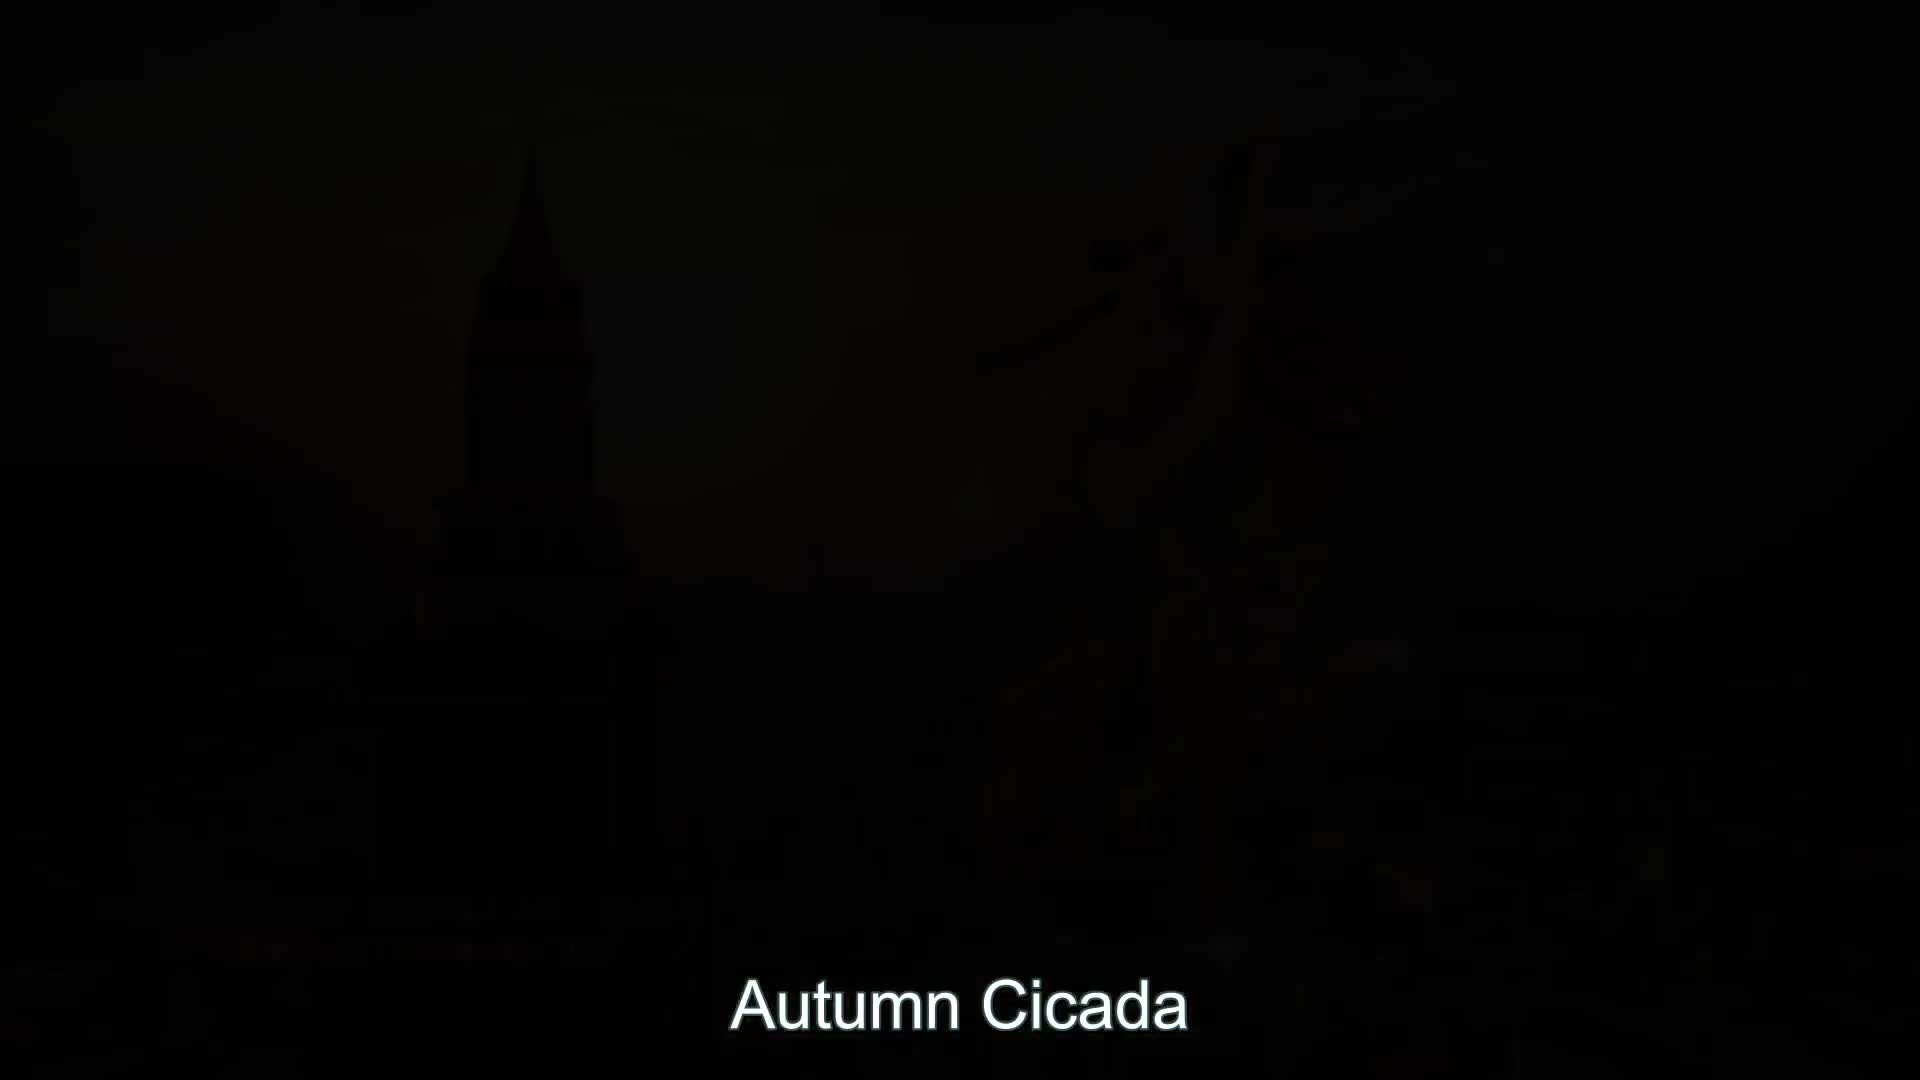 Autumn Cicada